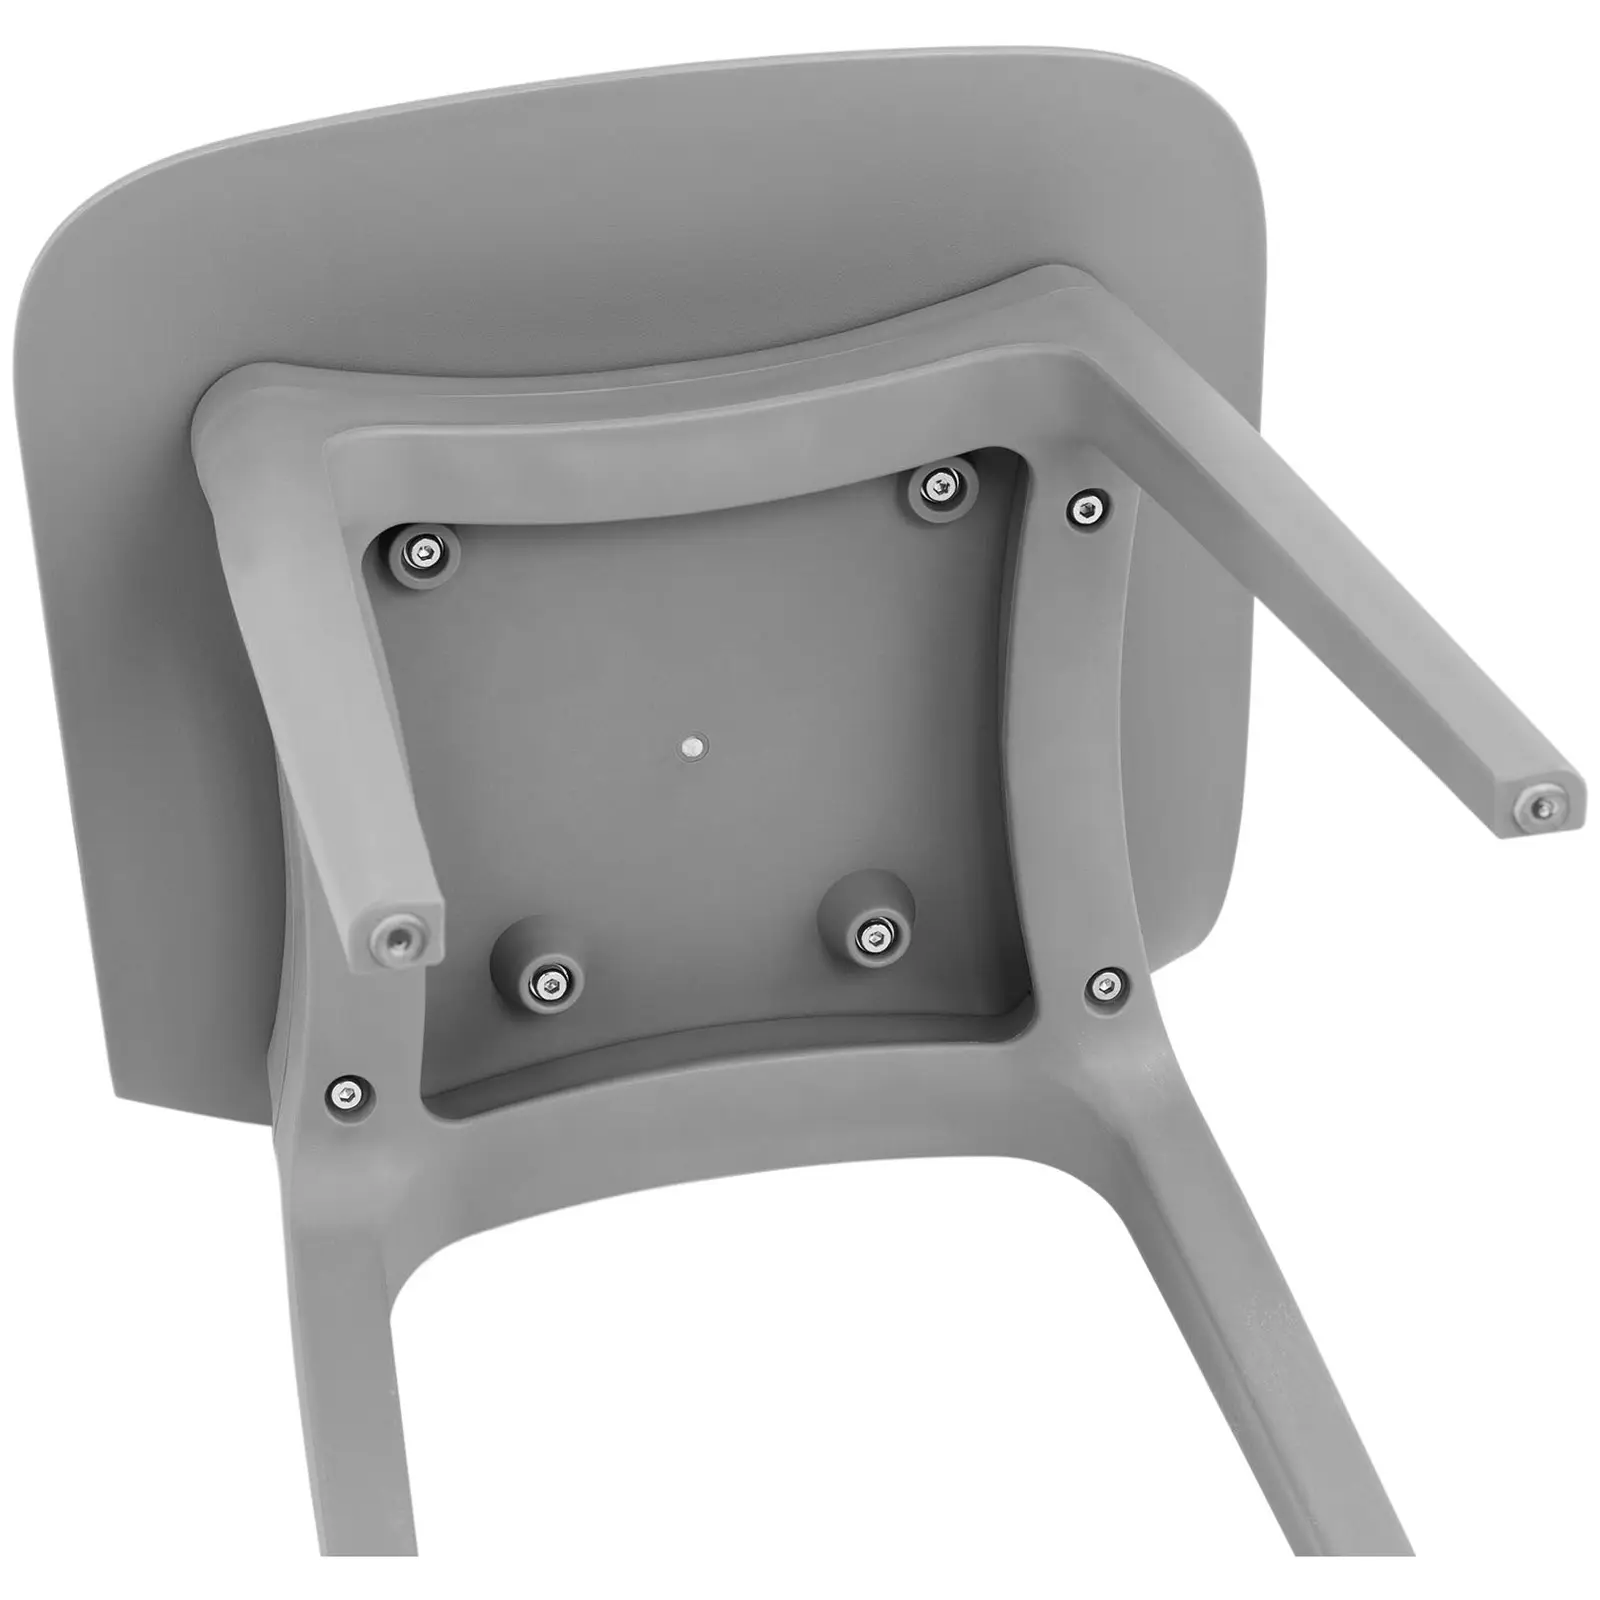 Cadeira - cinza - até 150 kg - 2 pçs.